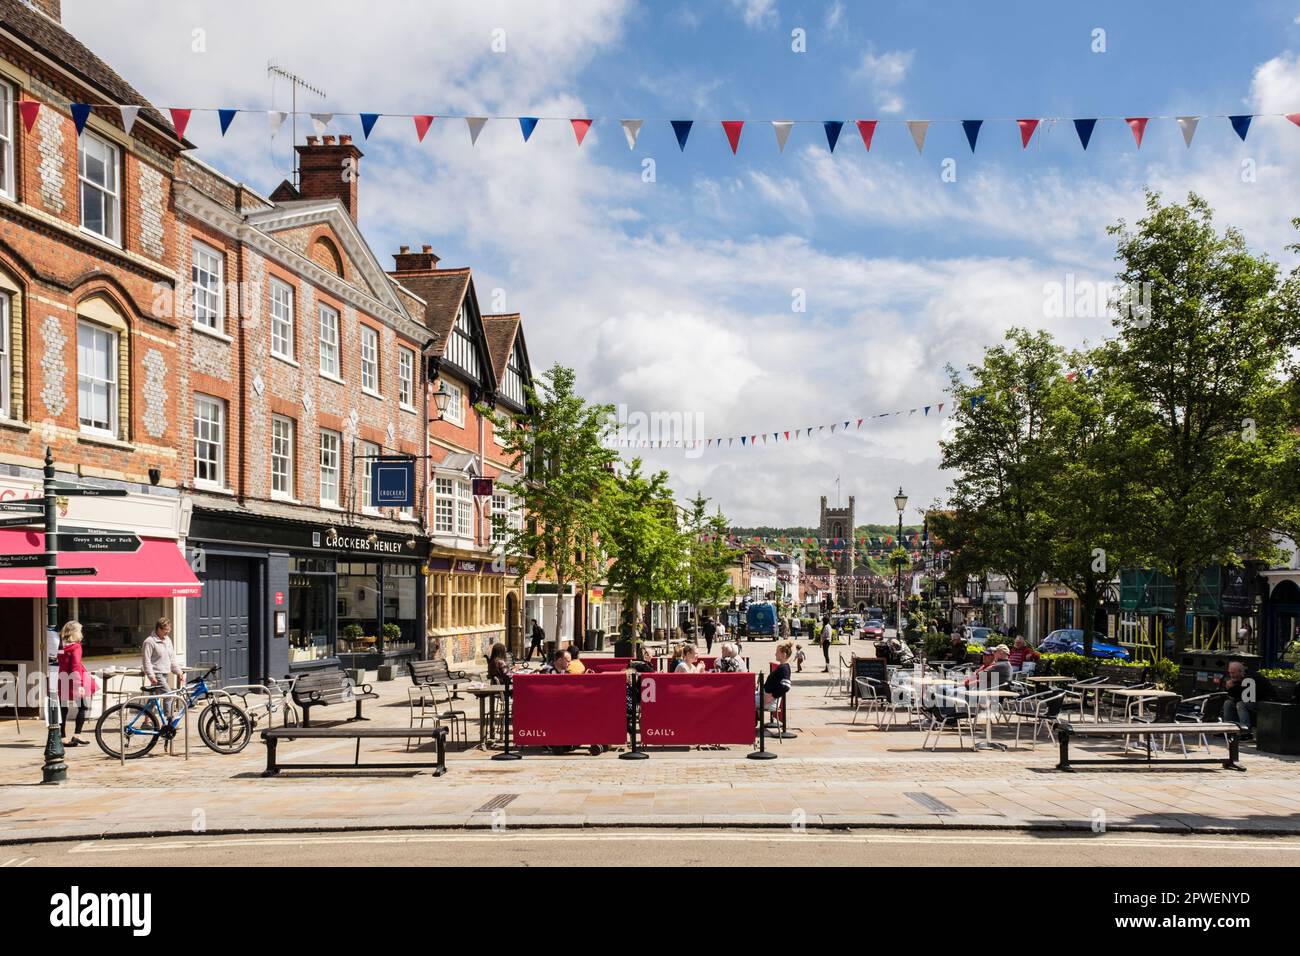 Street scene con persone in caffè all'aperto nel centro della città. Henley-on-Thames, Oxfordshire, Inghilterra, Regno Unito, Gran Bretagna Foto Stock